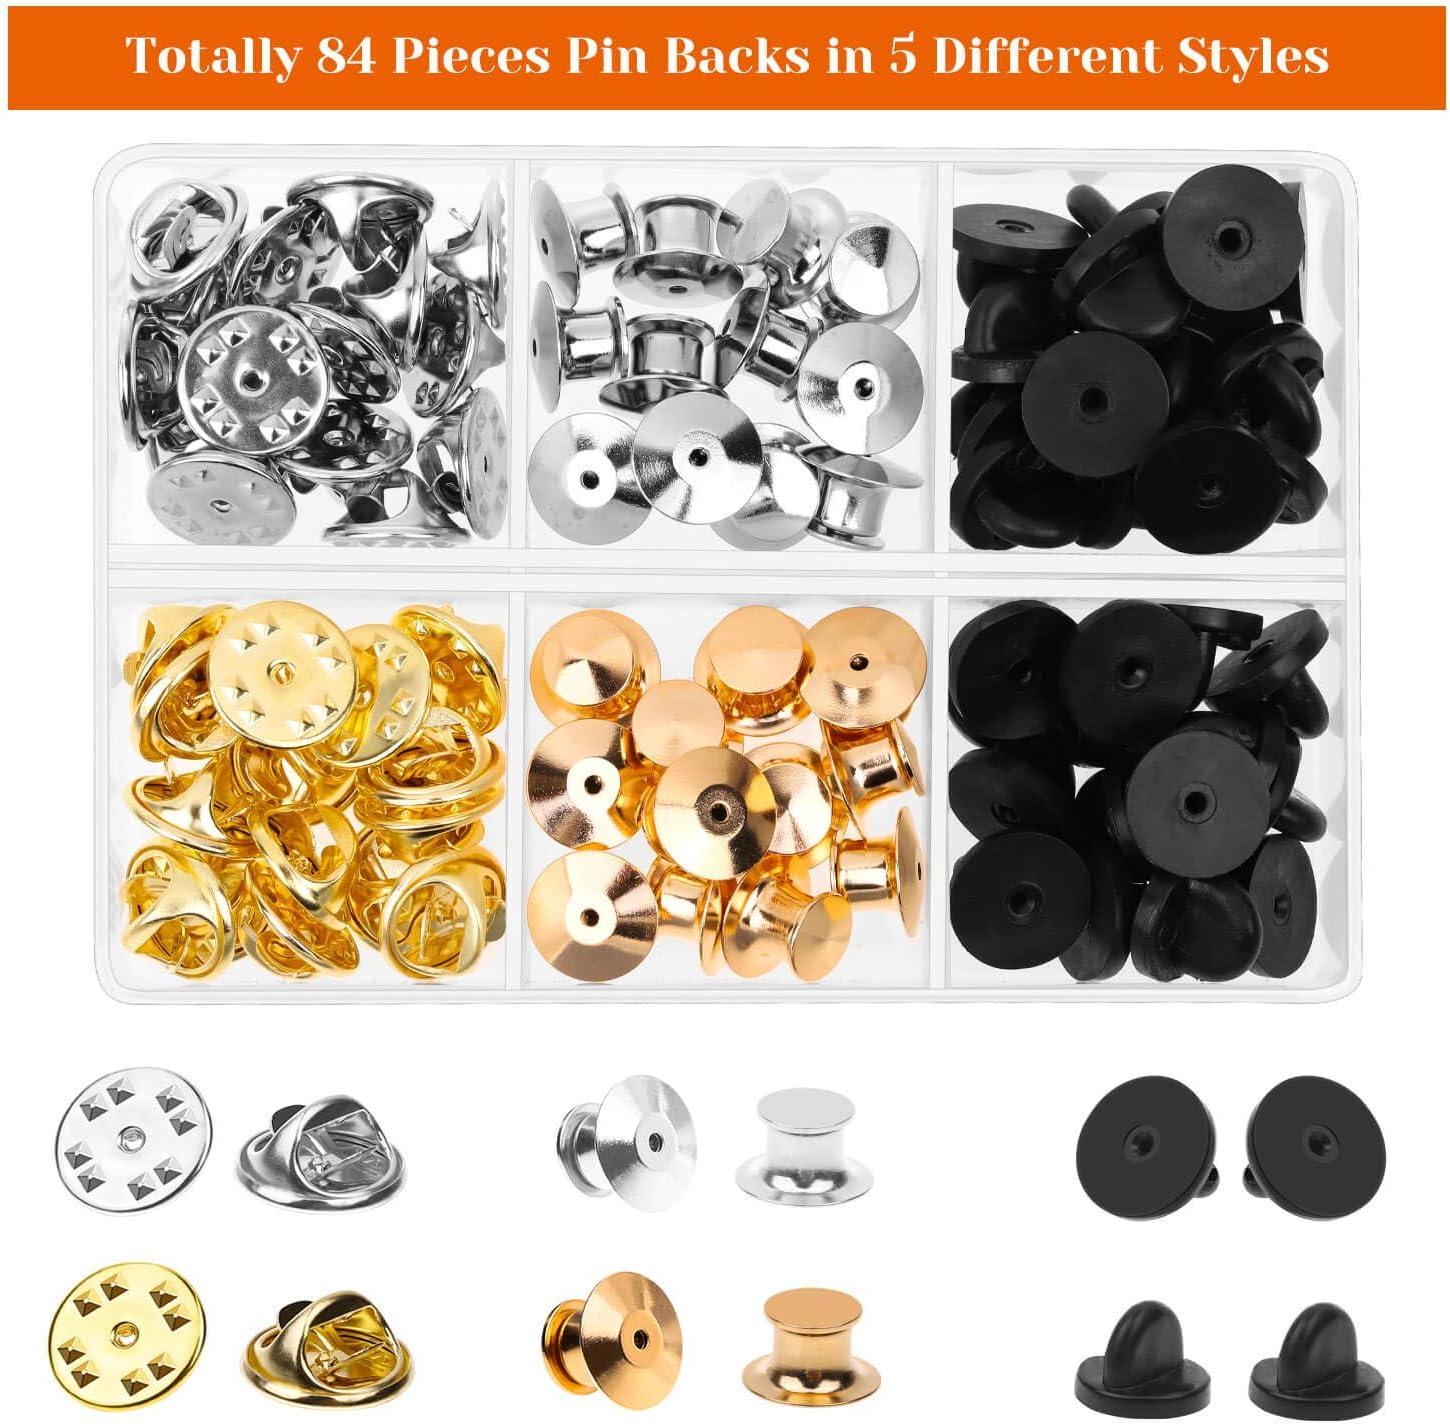 30/50 Pieces Pin Backs, Locking Pin Backs for Enamel Pins, Metal